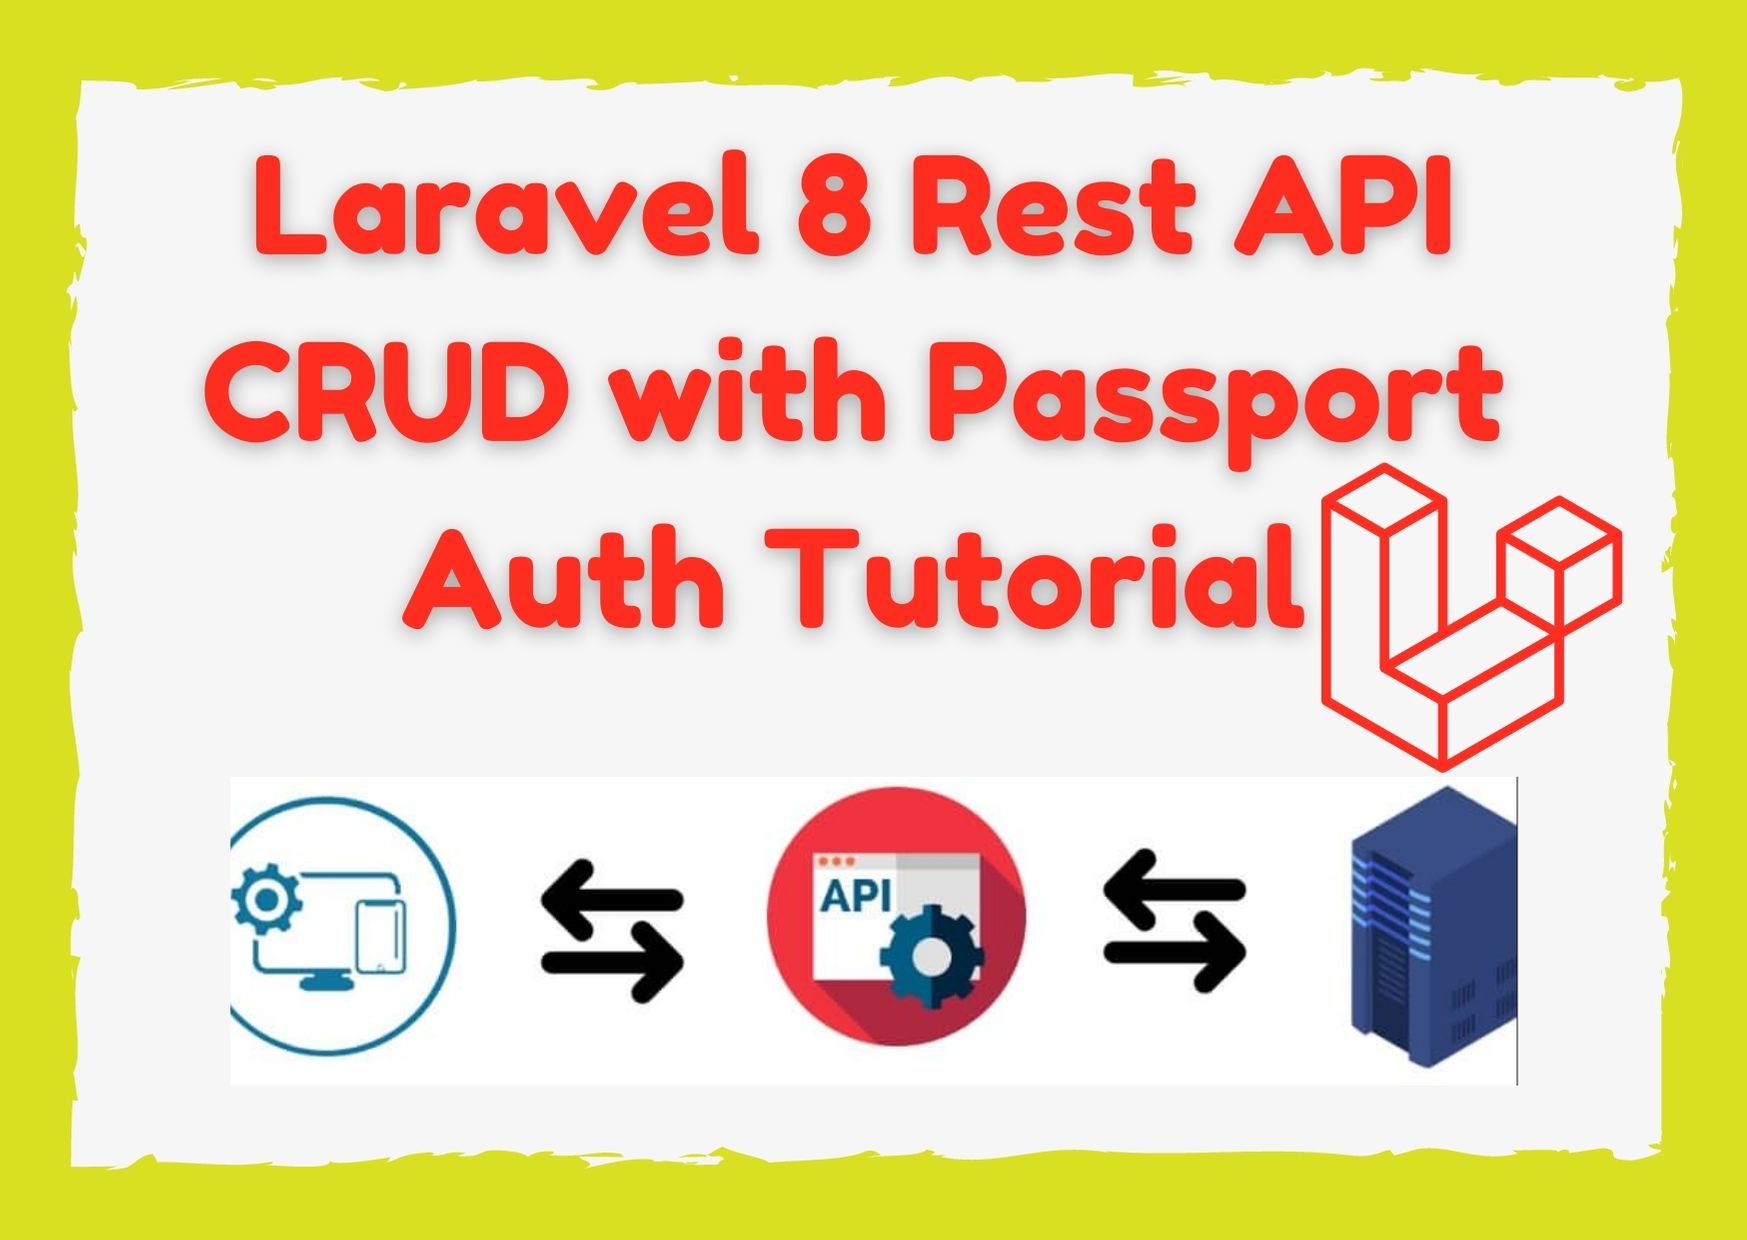 Laravel 8 [Rest API CRUD] with Passport Auth Tutorial | Laravel API